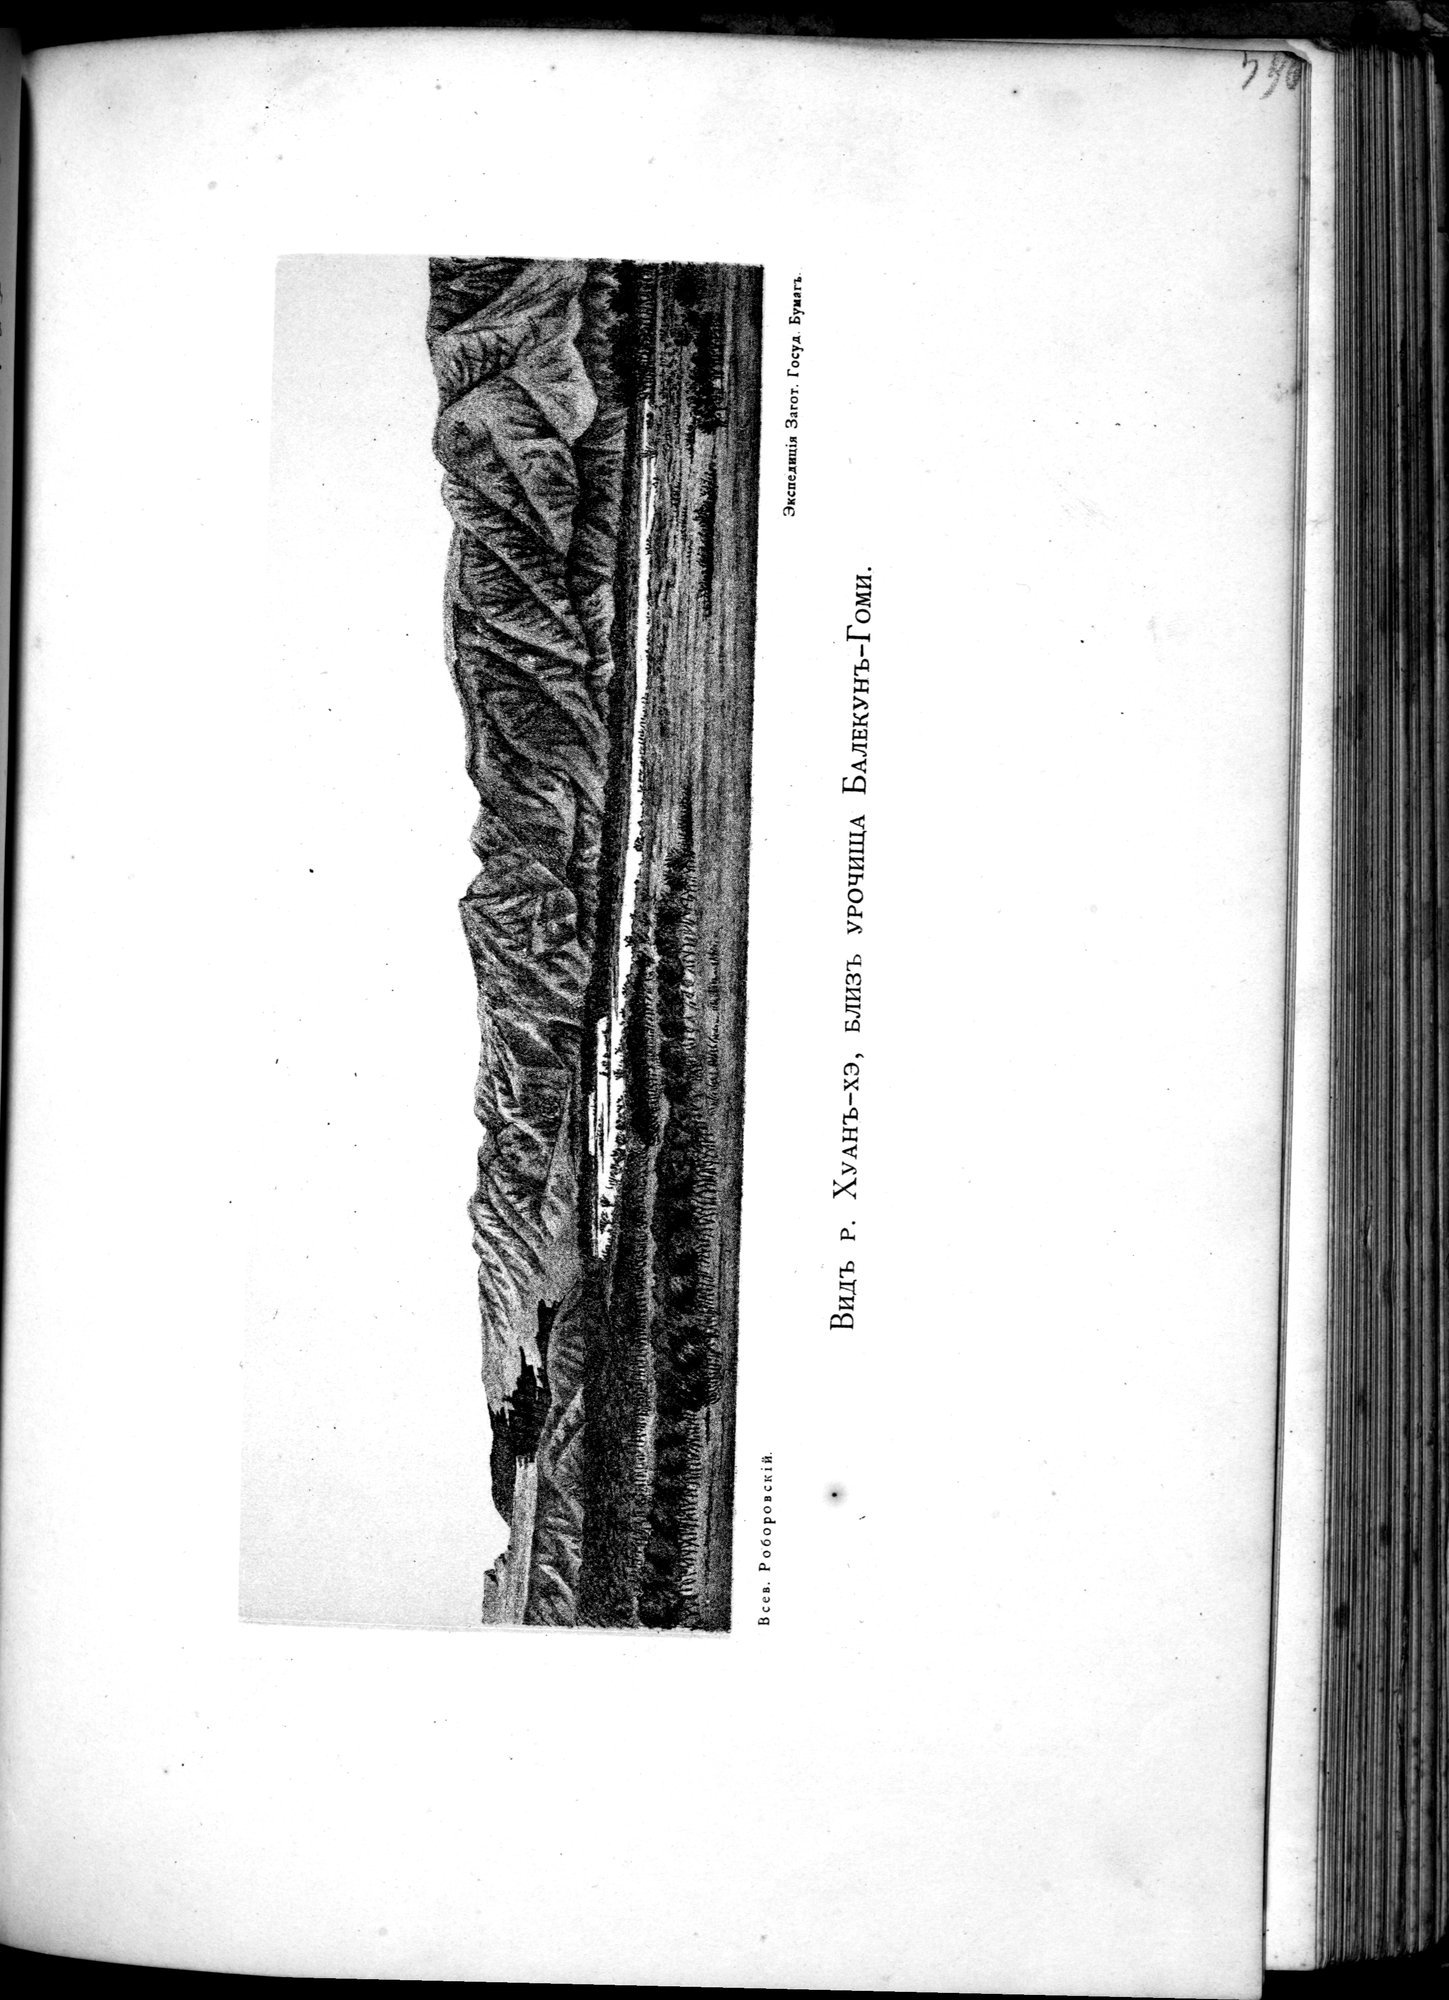 Iz Zaisana Cherez Khami v Tibet i na Verkhov'ya Zheltoi reki : vol.1 / Page 523 (Grayscale High Resolution Image)